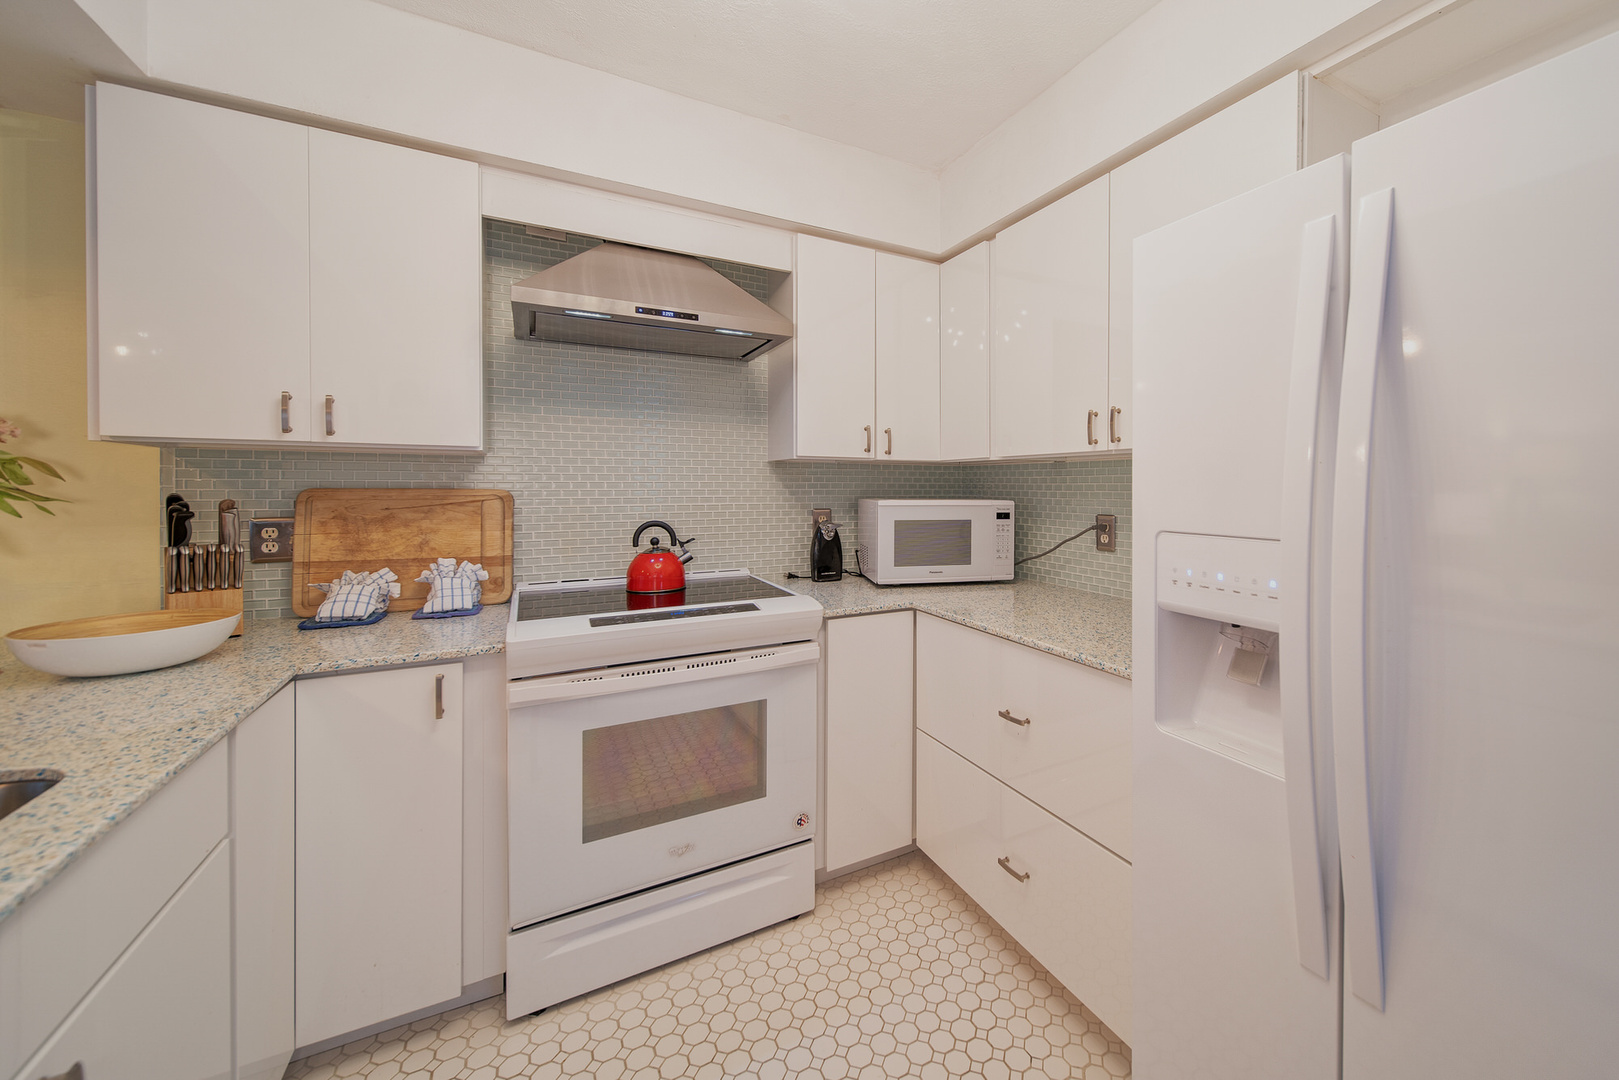 A Gulf Dream kitchen stove & fridge